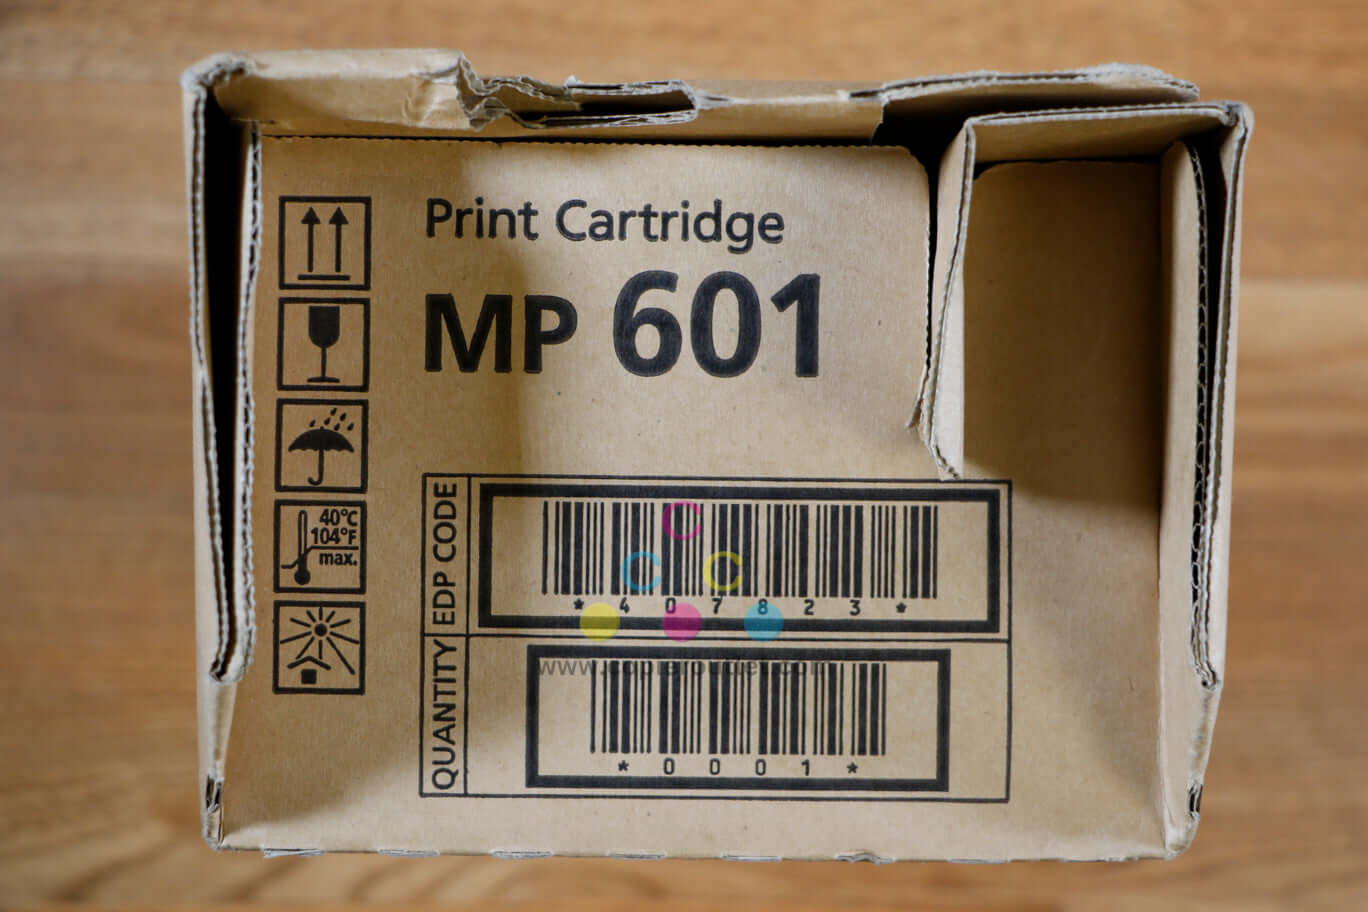 Genuine Ricoh MP 601 Black Print Cartridge 407823 501SPF/601SPF/SP 5300DN/5310DN